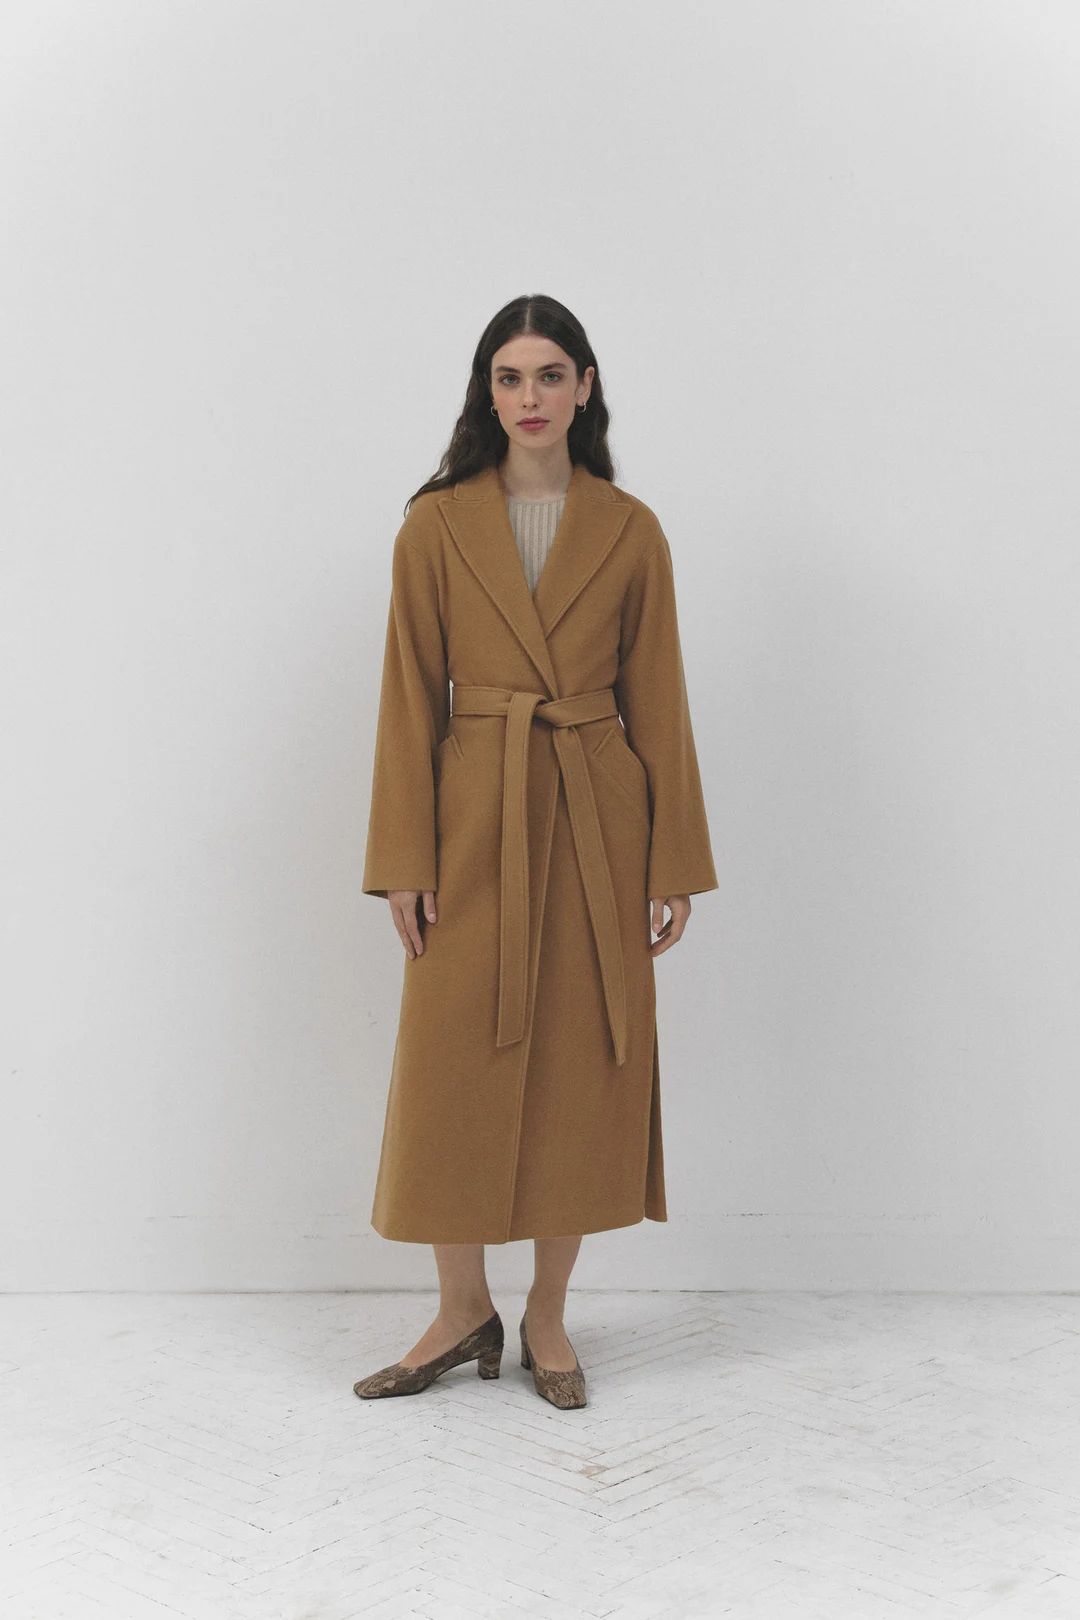 Сamel cashmere coat / Wool autumn coat / Wrap soft coat / Warm oversized wool overcoat / Winter ... | Etsy (US)